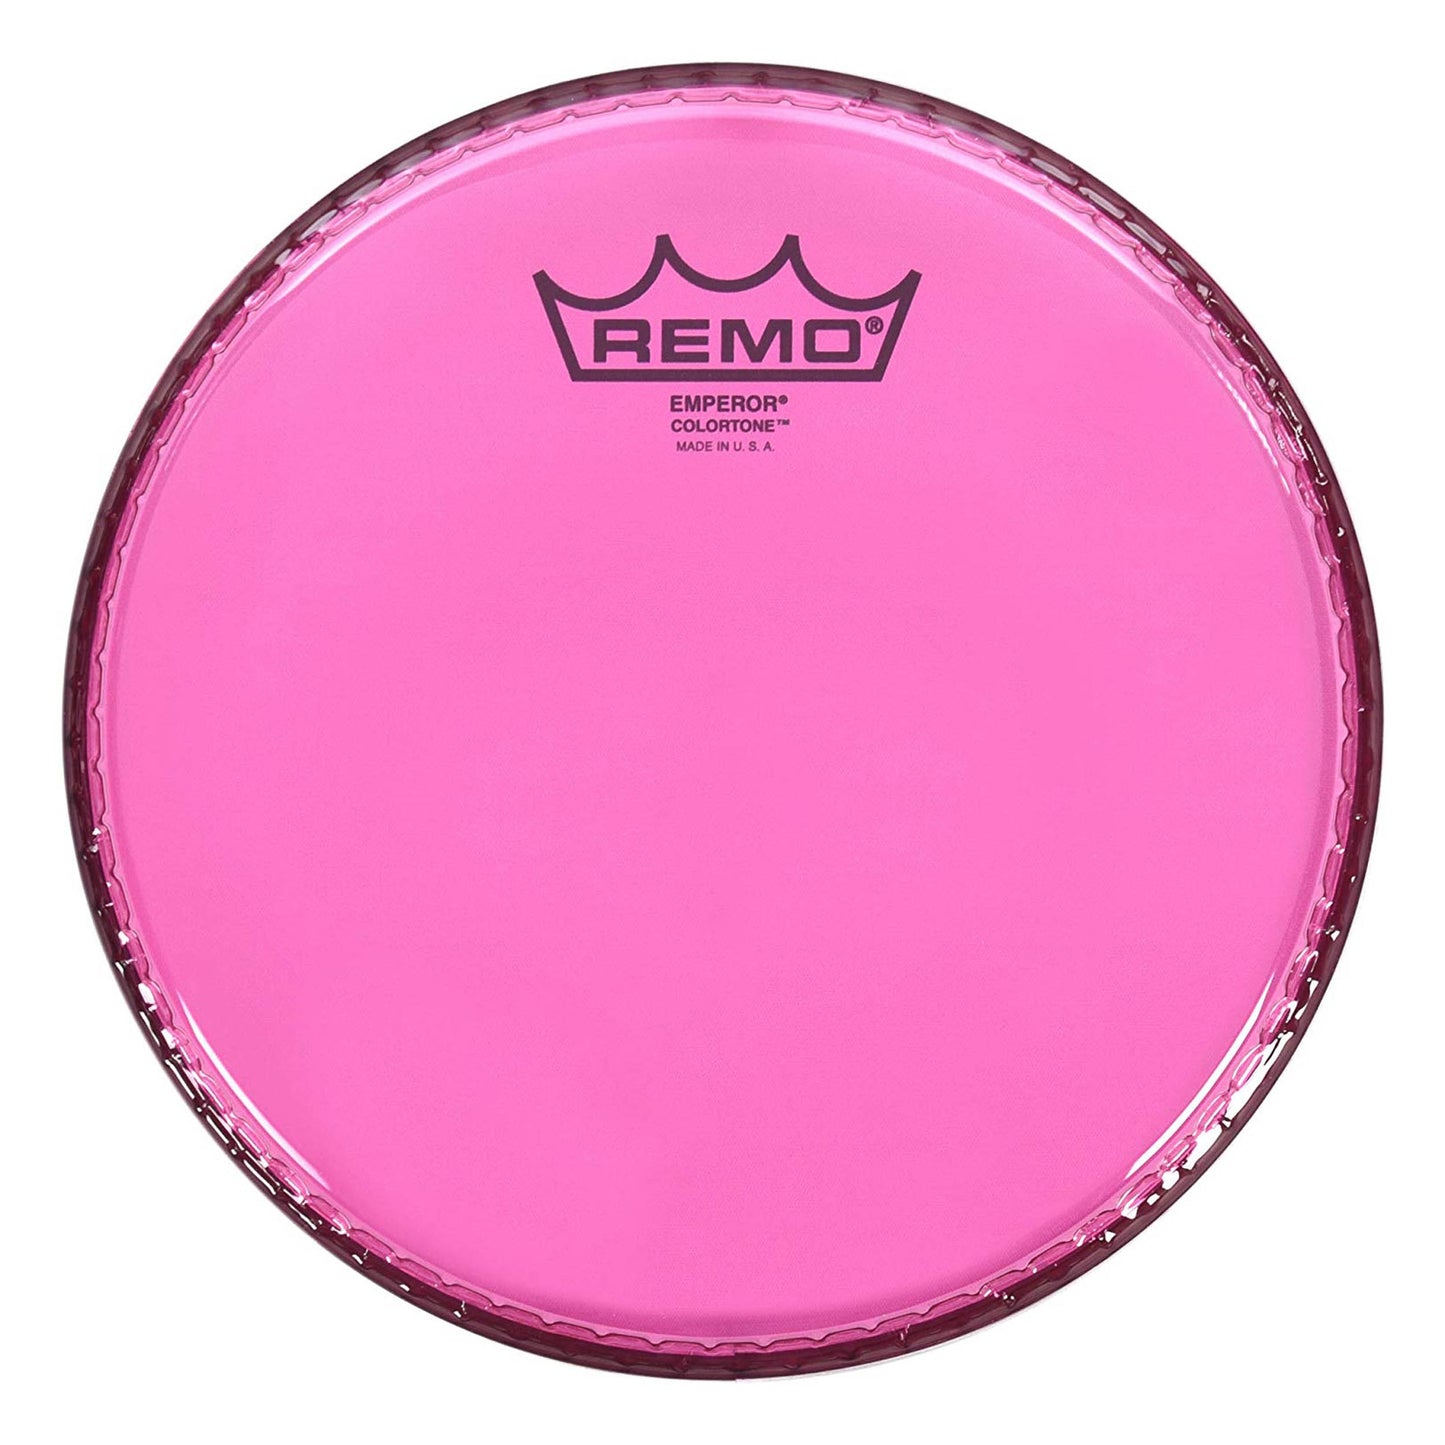 Remo Emperor Colortone Pink Drumhead 14"